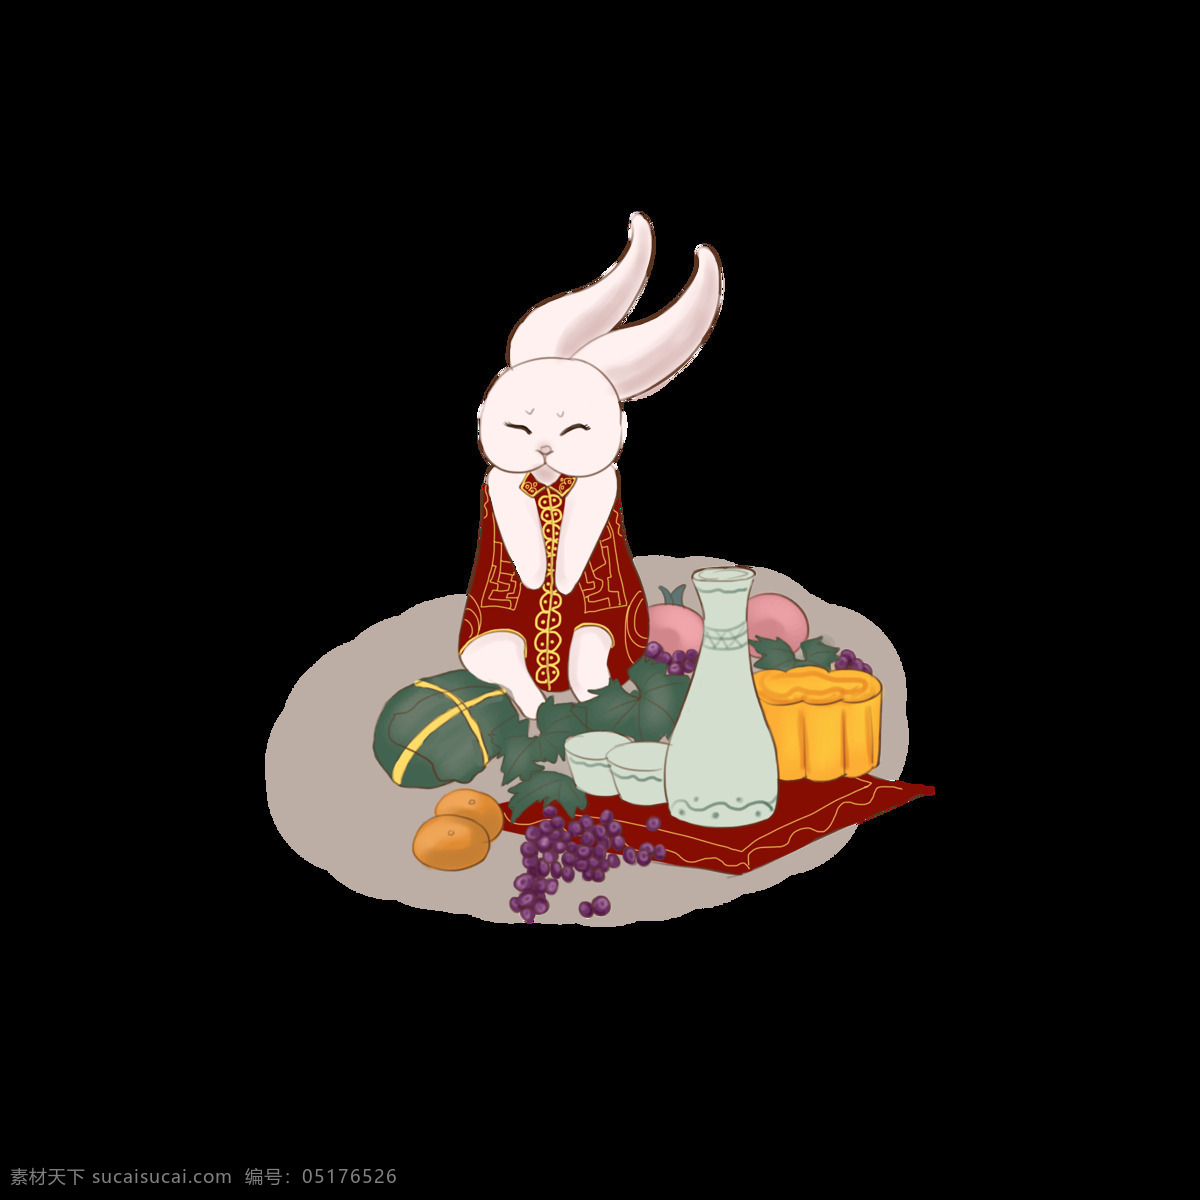 中秋节 欢乐 兔子 节日 场景 元素 购物 花朵 红色 喜庆 传统节日 月饼 高兴 吃月饼 望月 树木 气氛 灯笼 思念